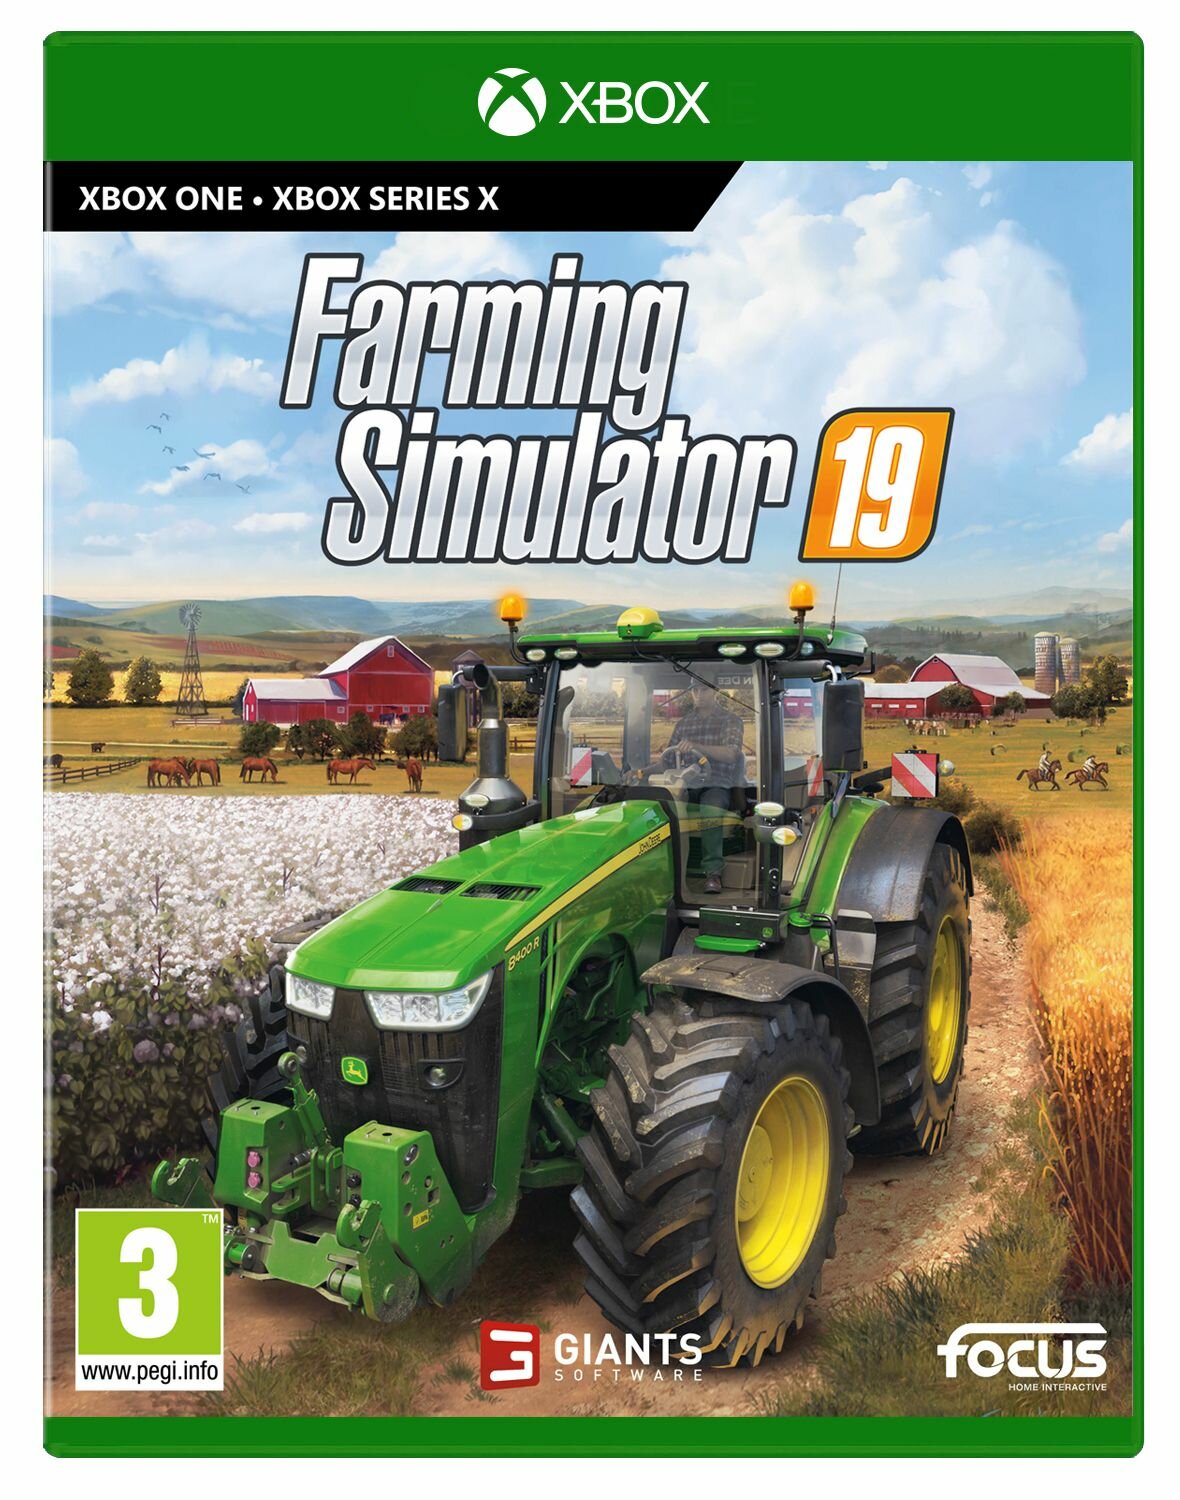 Farming Simulator 19 Gra Xbox One Kompatybilna Z Xbox Series X Ceny I Opinie W Media Expert